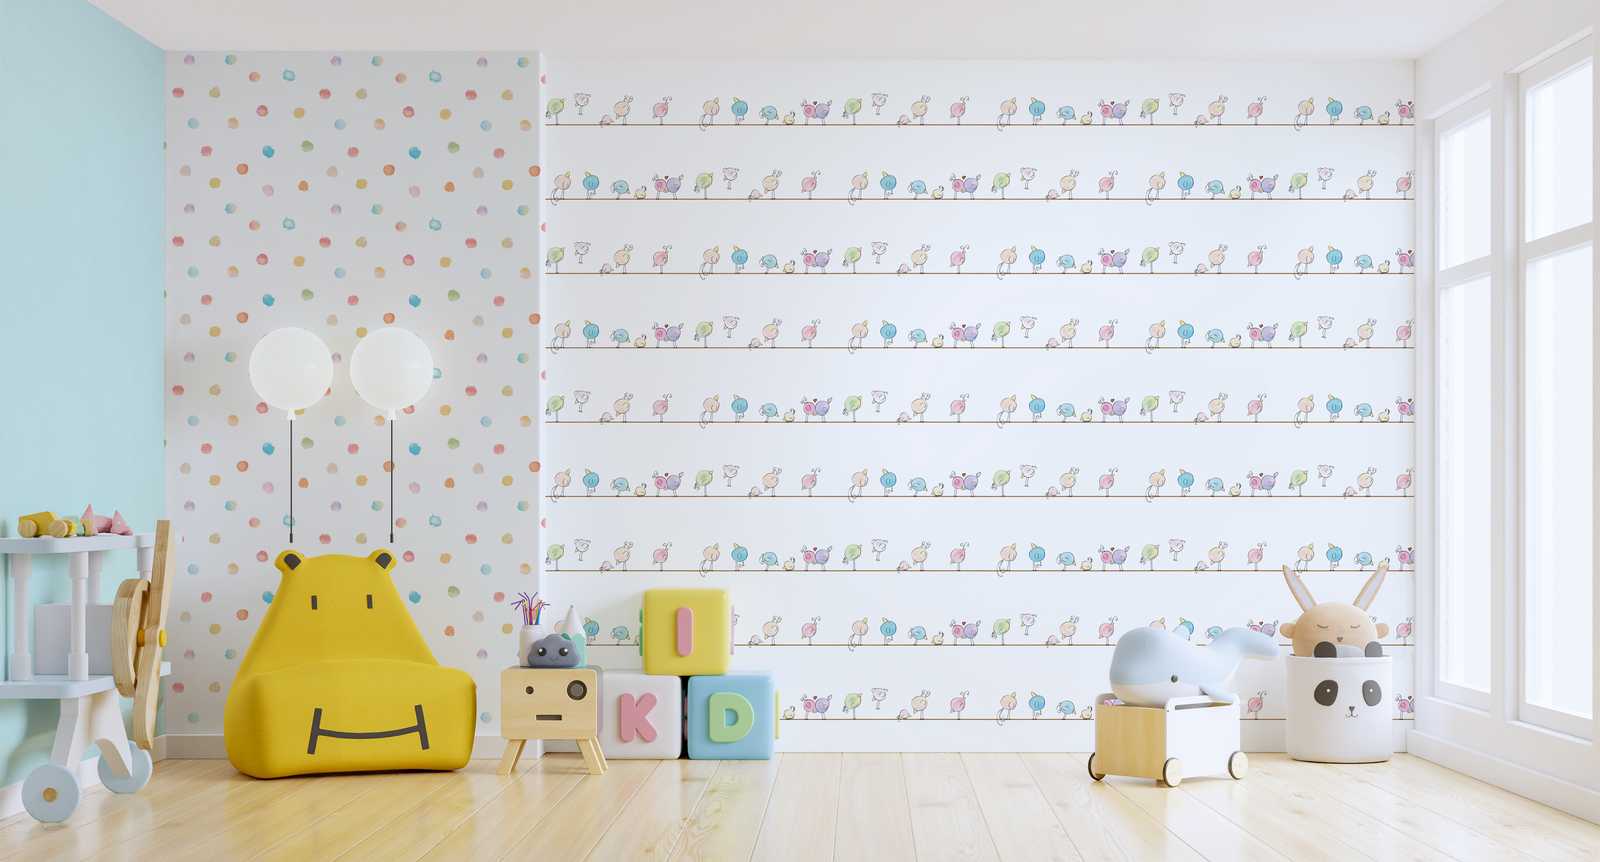             Papier peint chambre enfant aquarelle & oiseaux - multicolore, blanc, bleu
        